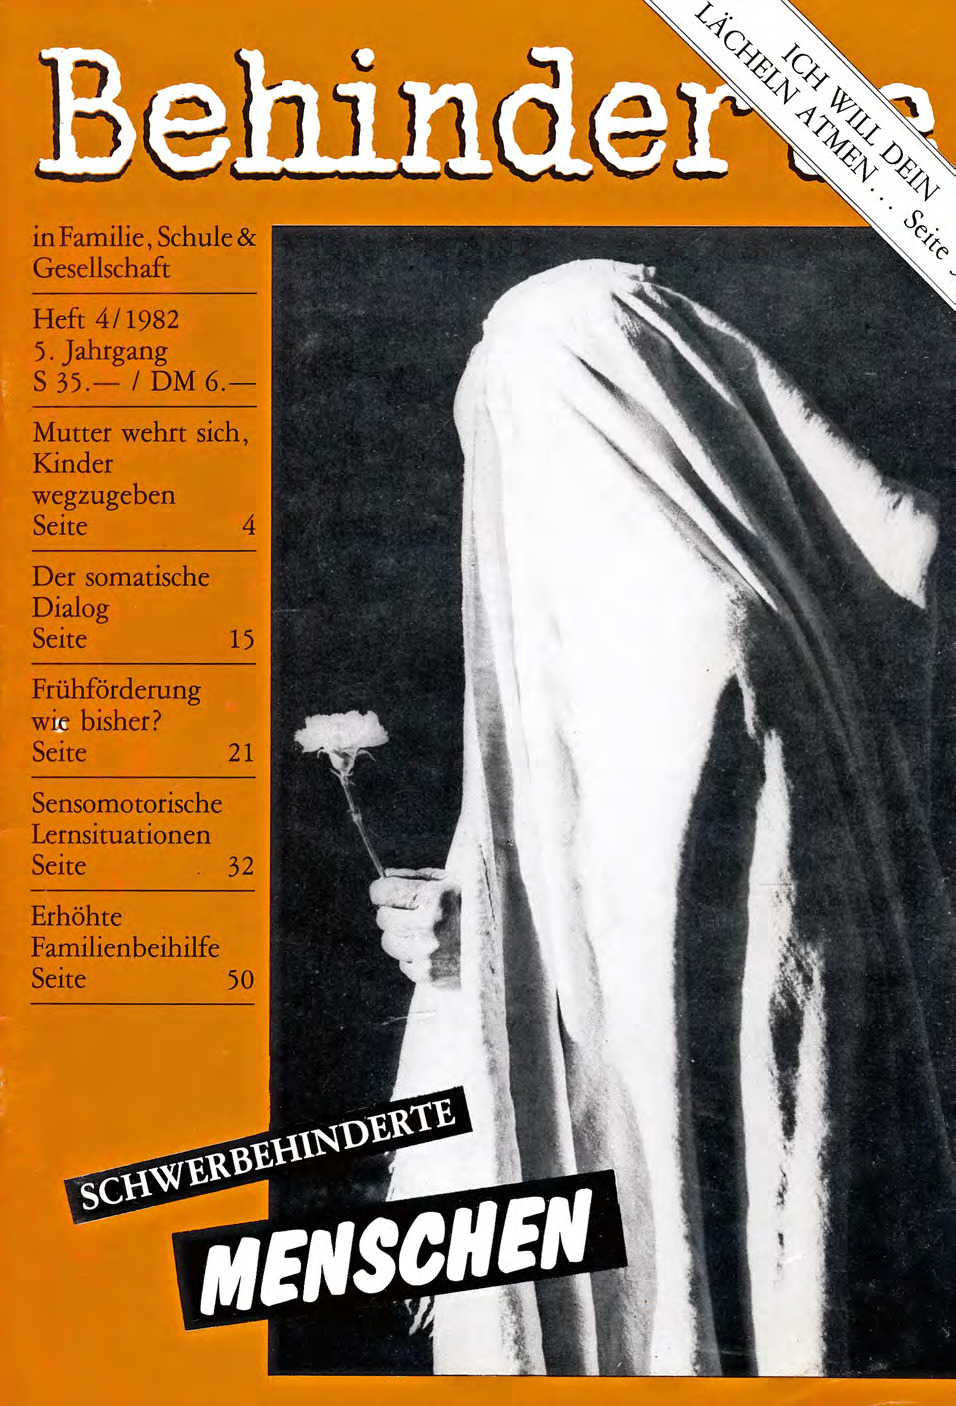 Titelbild der Zeitschrift BEHINDERTE MENSCHEN, Ausgabe 4/1982 "Schwerbehinderte Menschen"